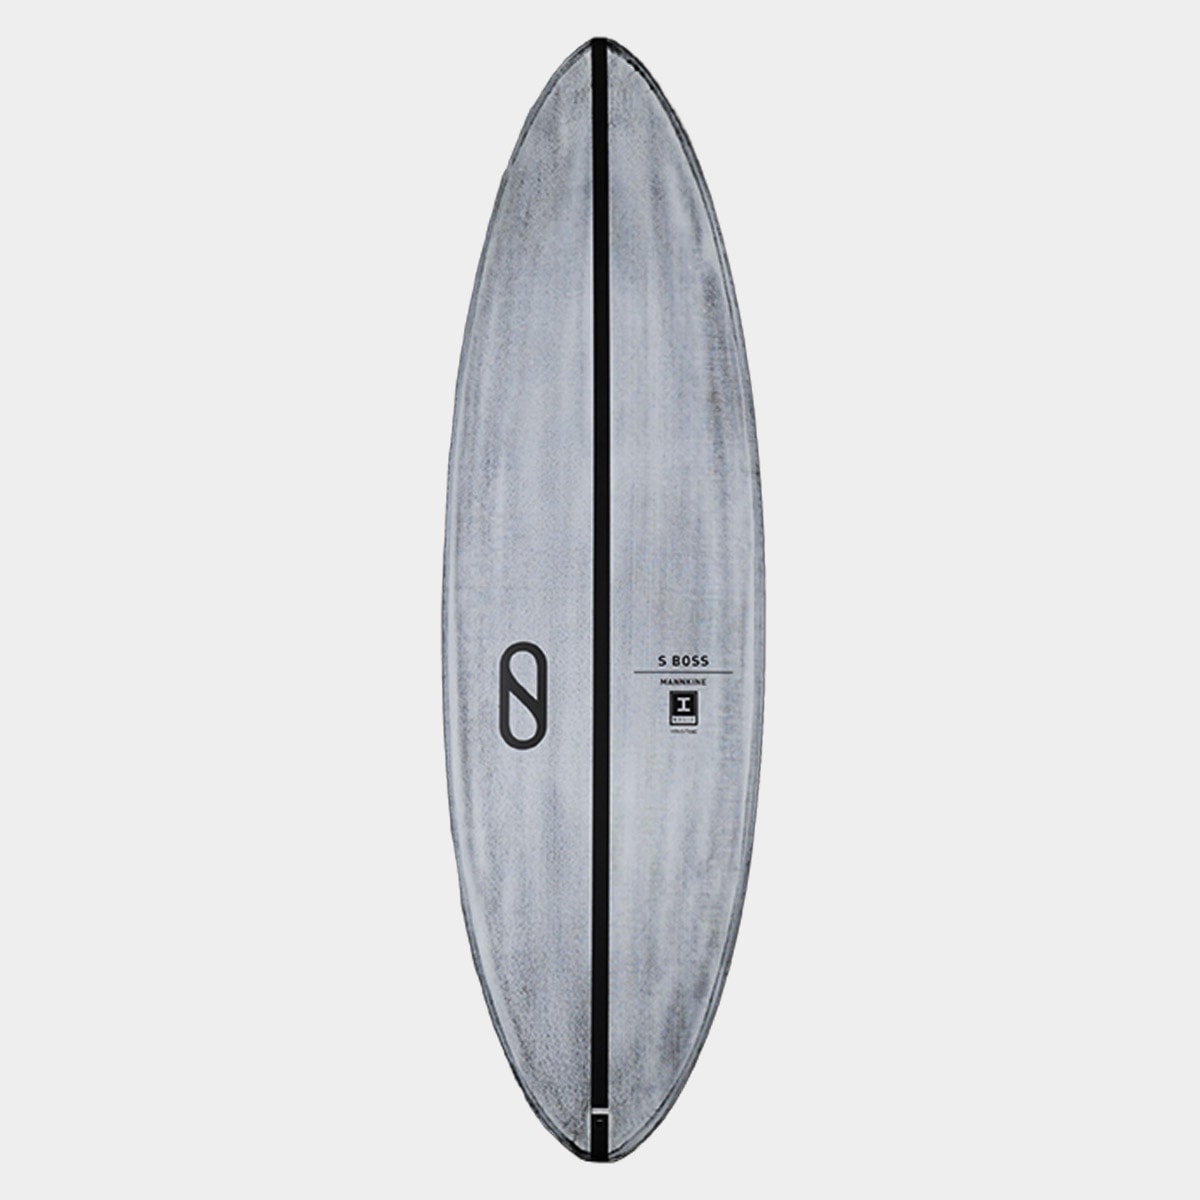 SurfBoardNet / サーフボード ブランド:PATAGONIA